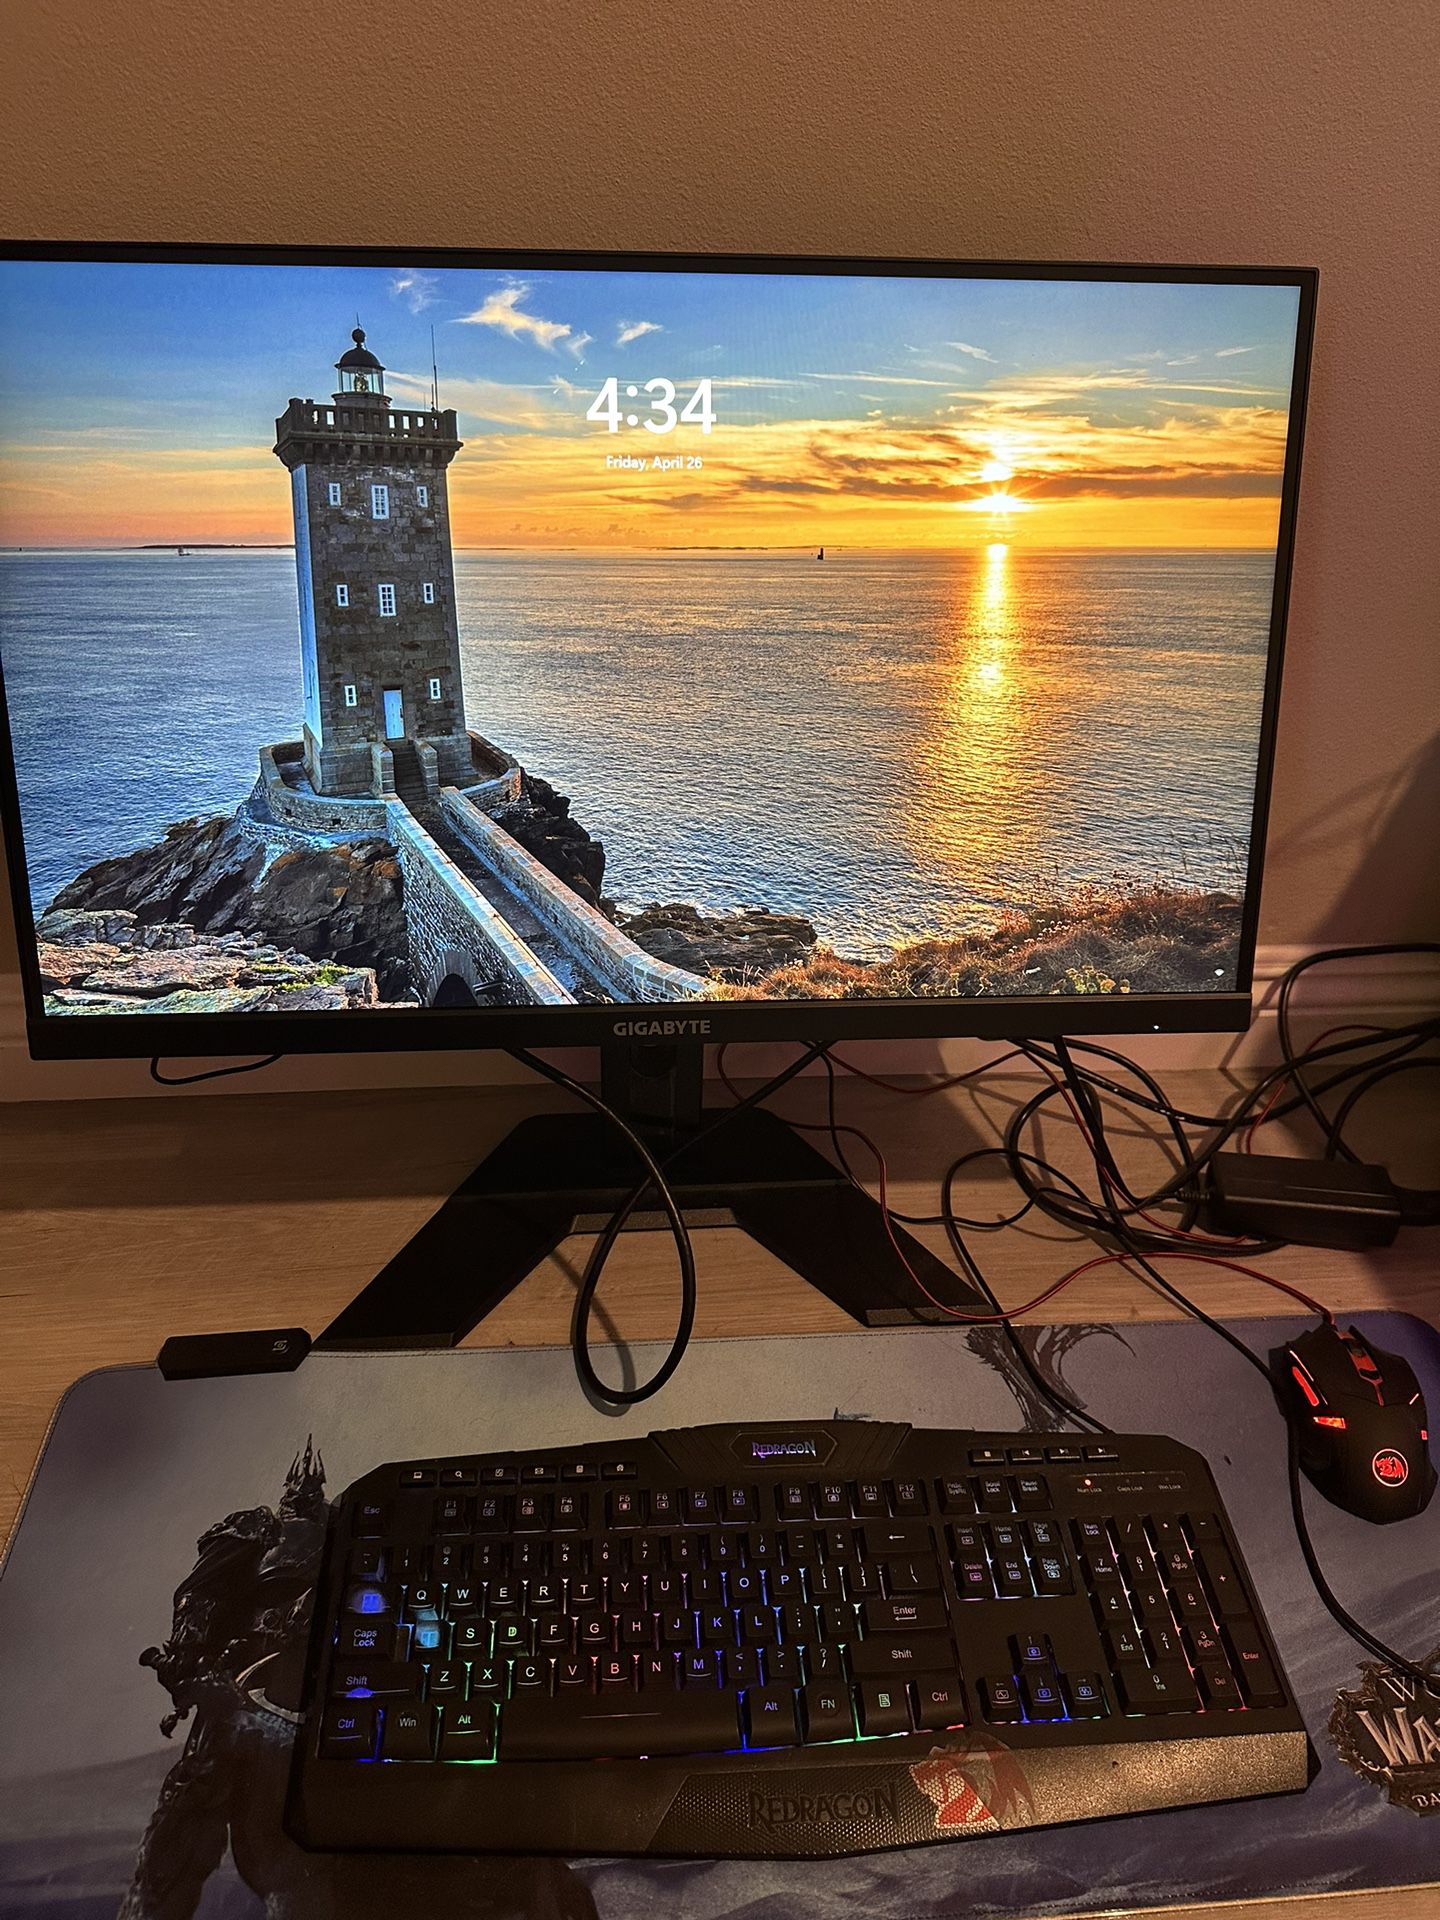 Gaming Computer And Monitor $800